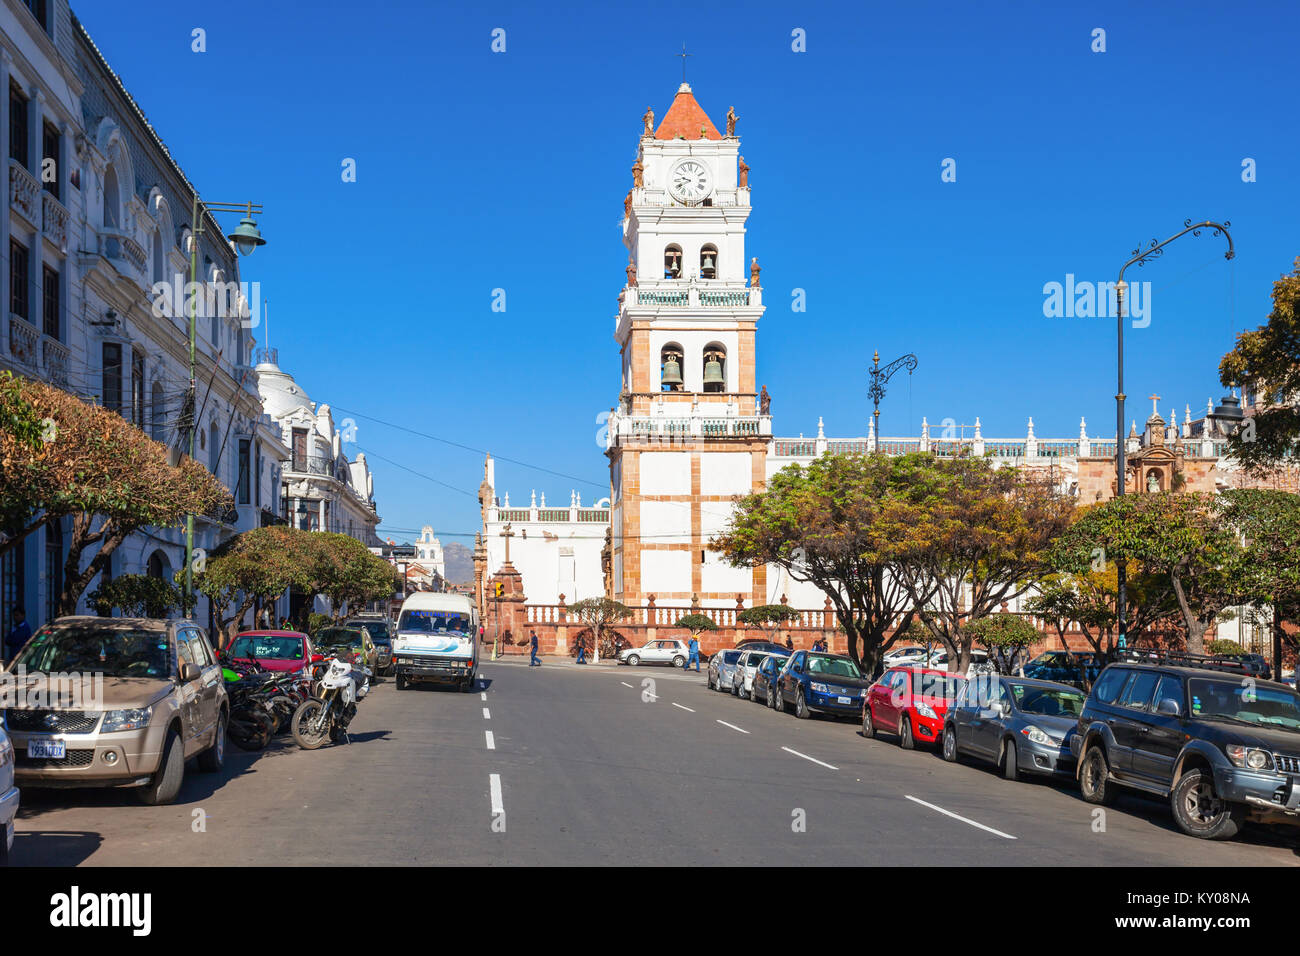 SUCRE, BOLIVIA - Mayo 22, 2015: la Catedral de Sucre (La Catedral Metropolitana de la ciudad de Sucre) está ubicado en la Plaza 25 de mayo plaza en Sucre, Bolivia. Foto de stock